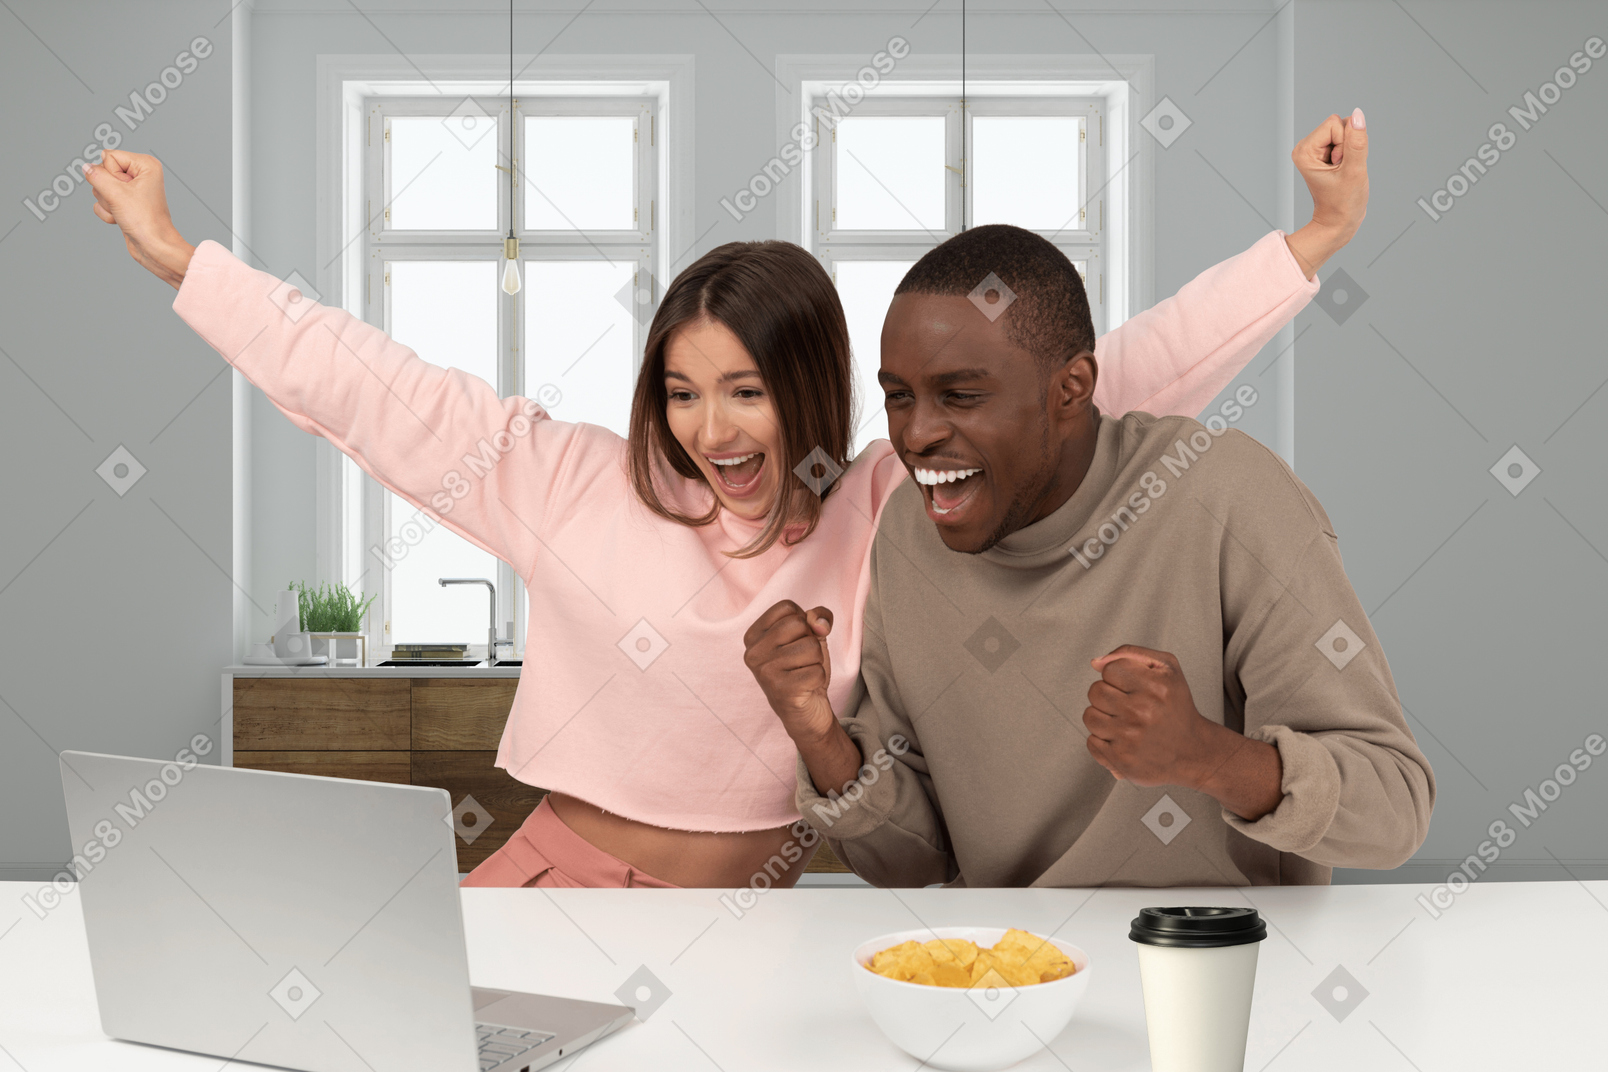 ノートパソコンの画面を見て興奮している若いカップル